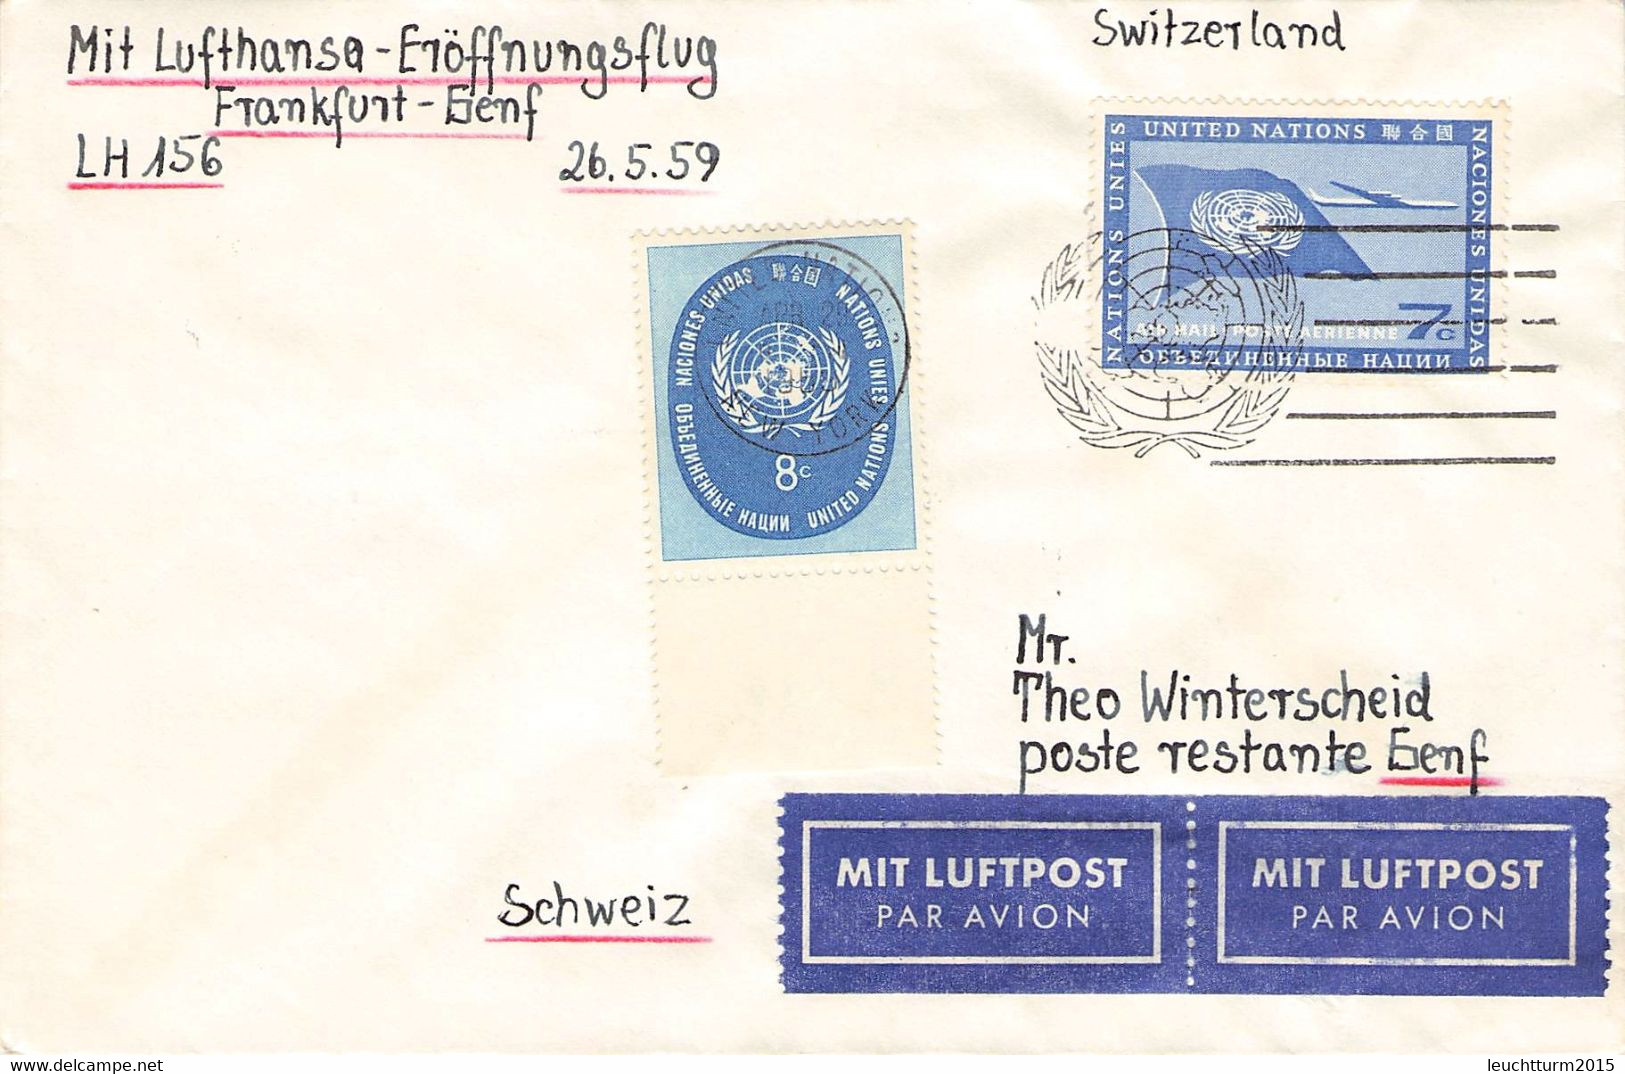 UNITED NATIONS - FIRST FLIGHT LH156 FRANKFURT - GENF 26.5.1959 / ZL81 - Poste Aérienne